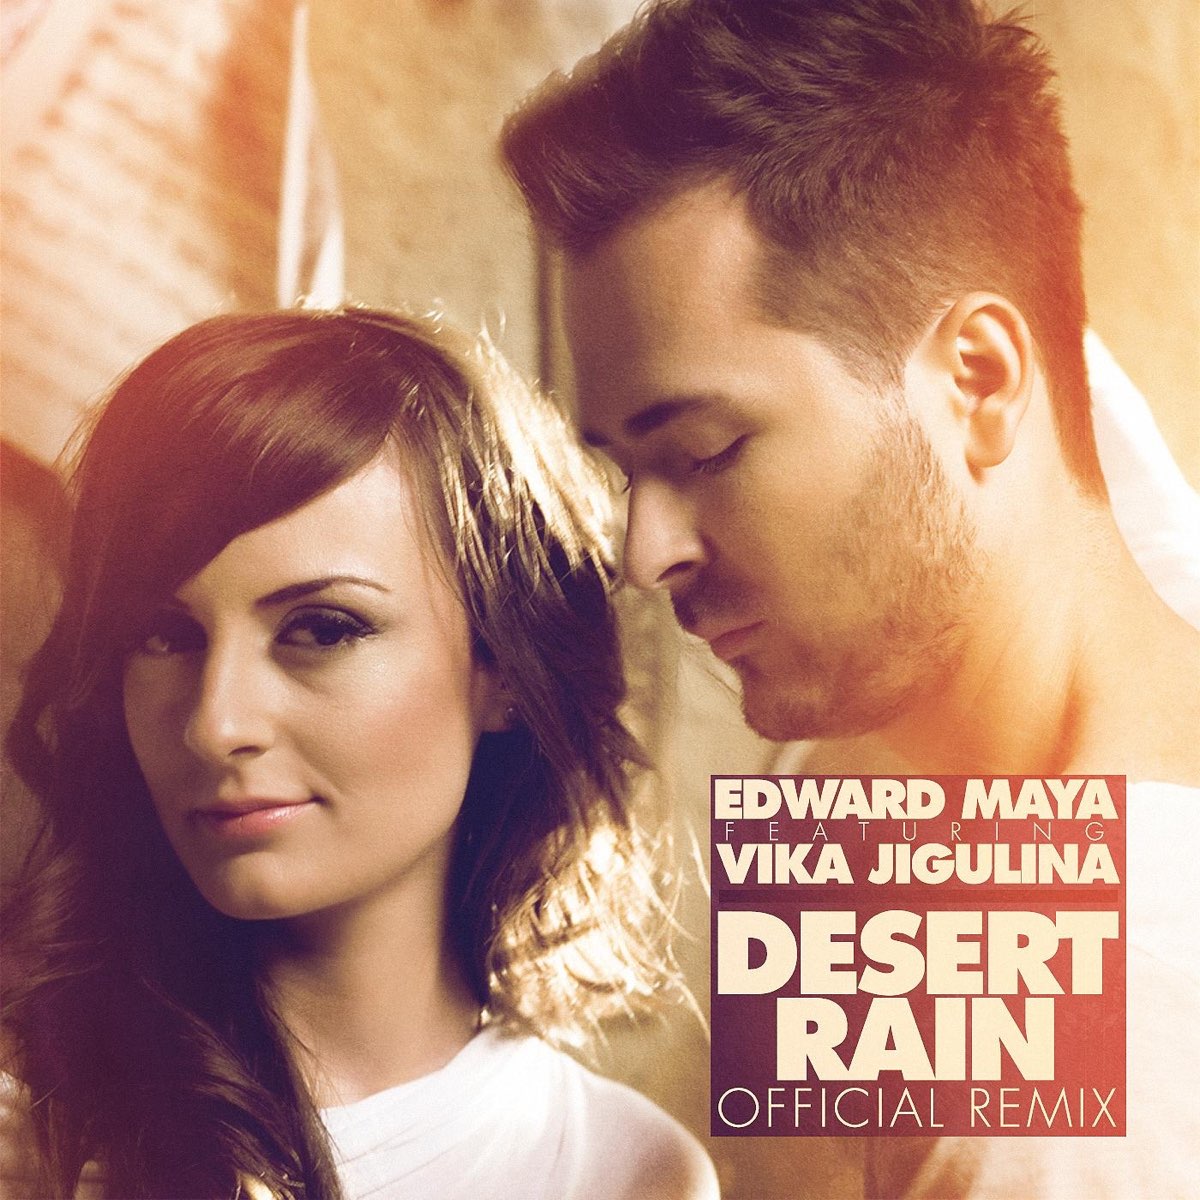 Edward maya stereo love remix. Desert Rain Вика Жигулина. Edward Maya Desert Rain album.